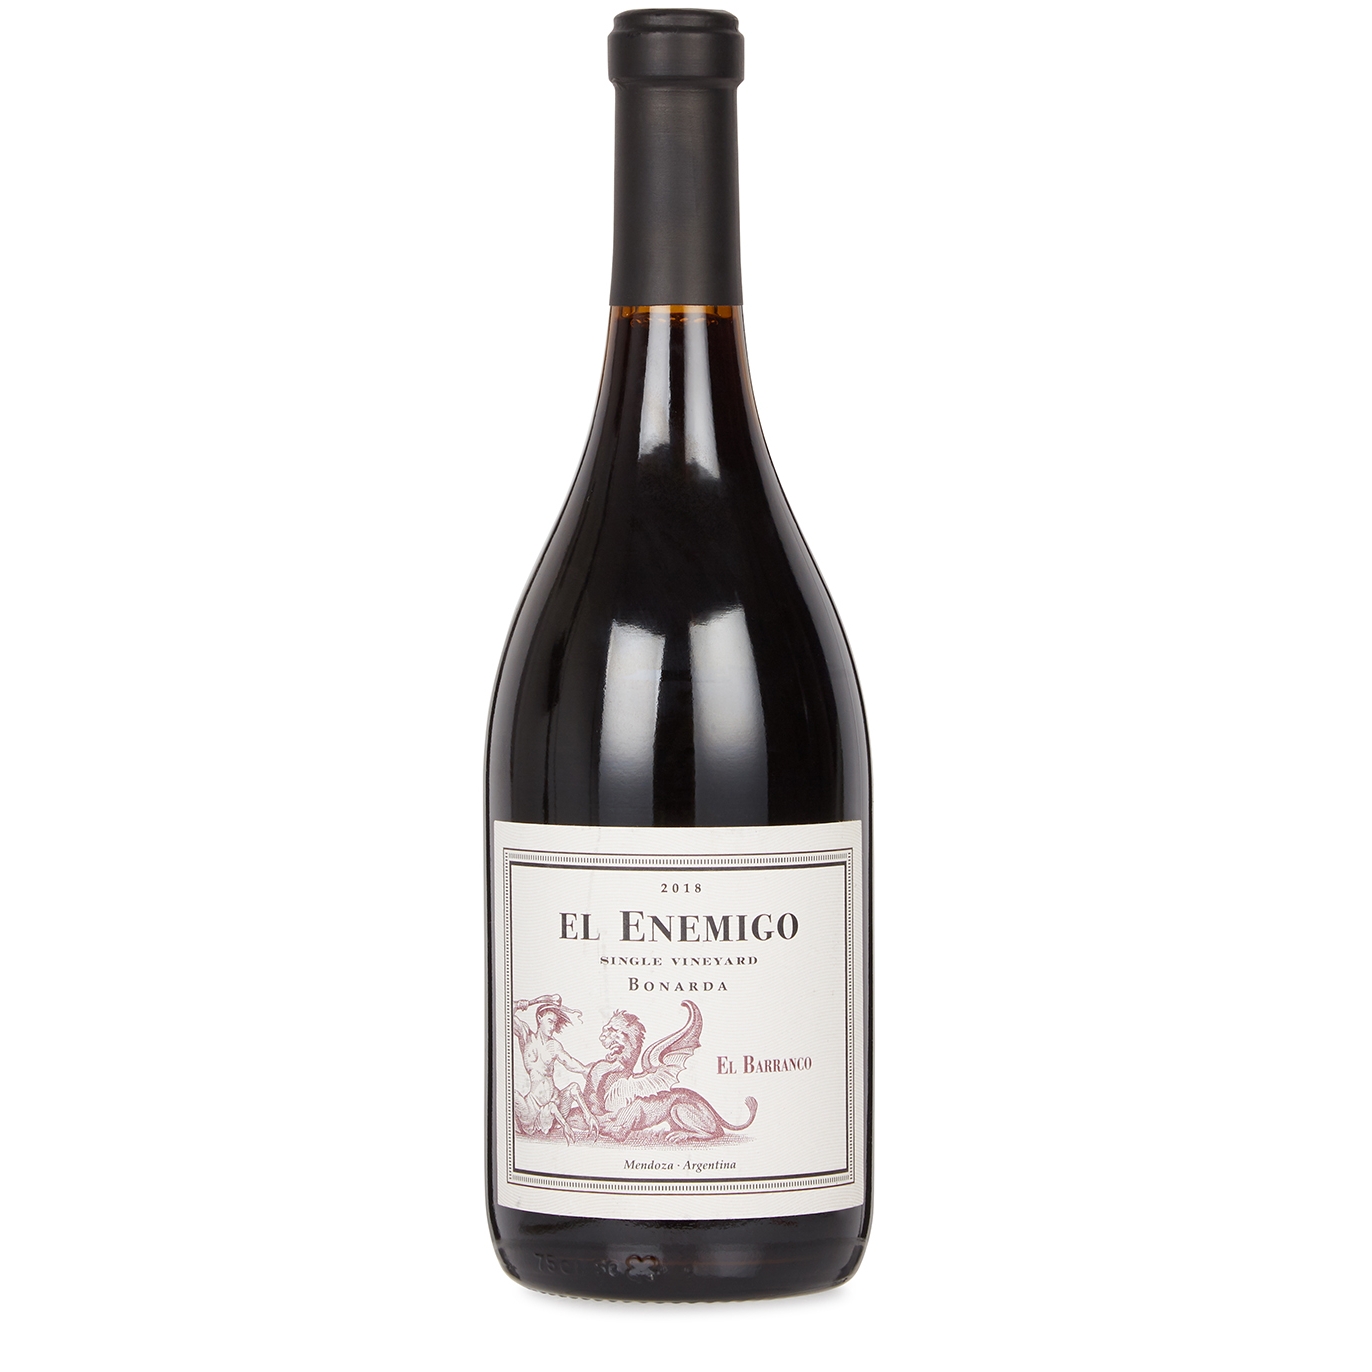 El Enemigo El Barranco Single Vineyard Bonarda 2018 Red Wine